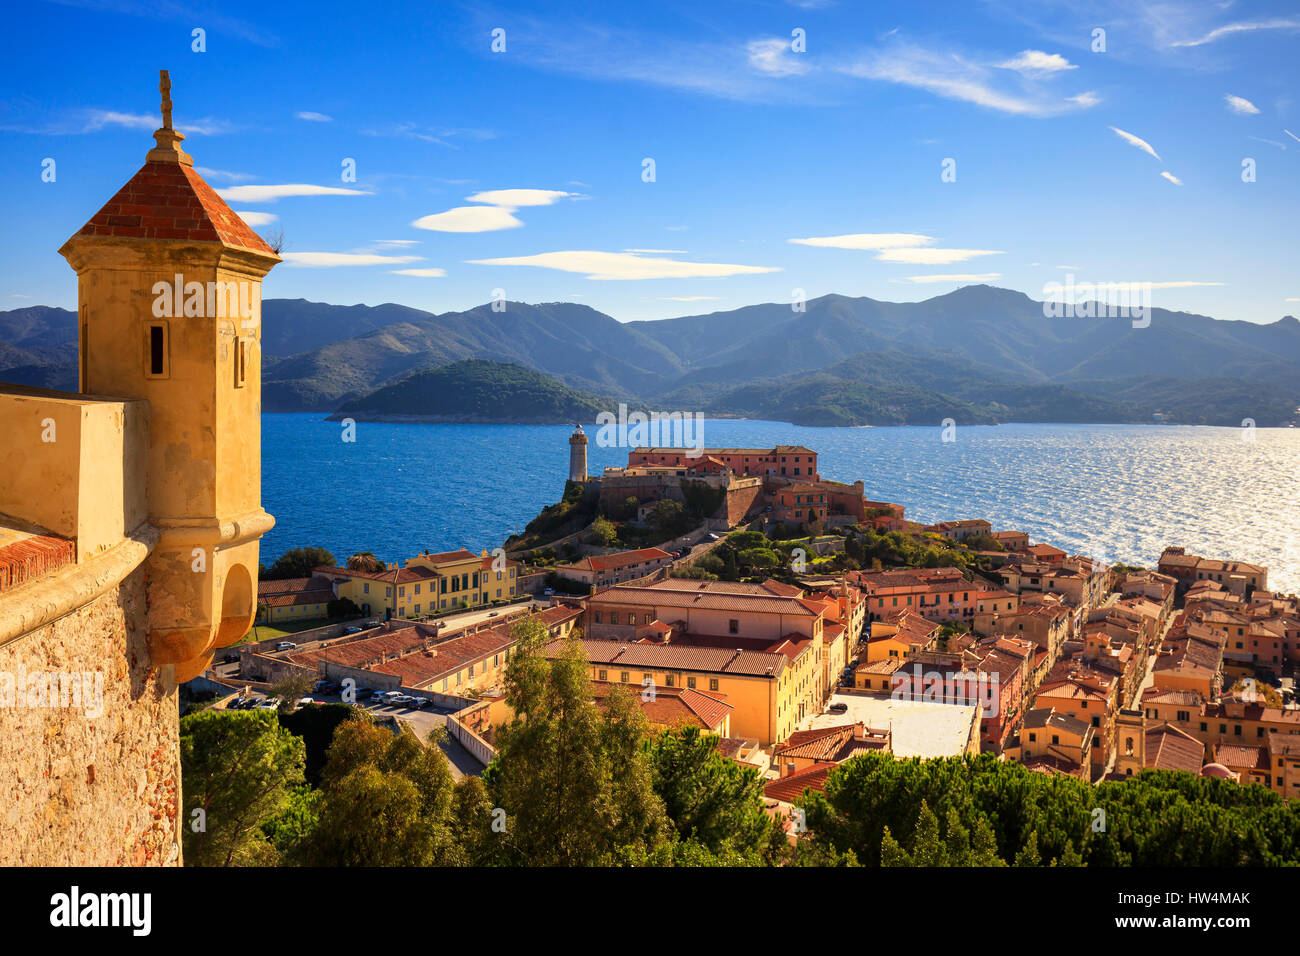 Insel Elba, Portoferraio Luftbild. Leuchtturm und mittelalterliche Festung. Toskana, Italien, Europa. Stockfoto